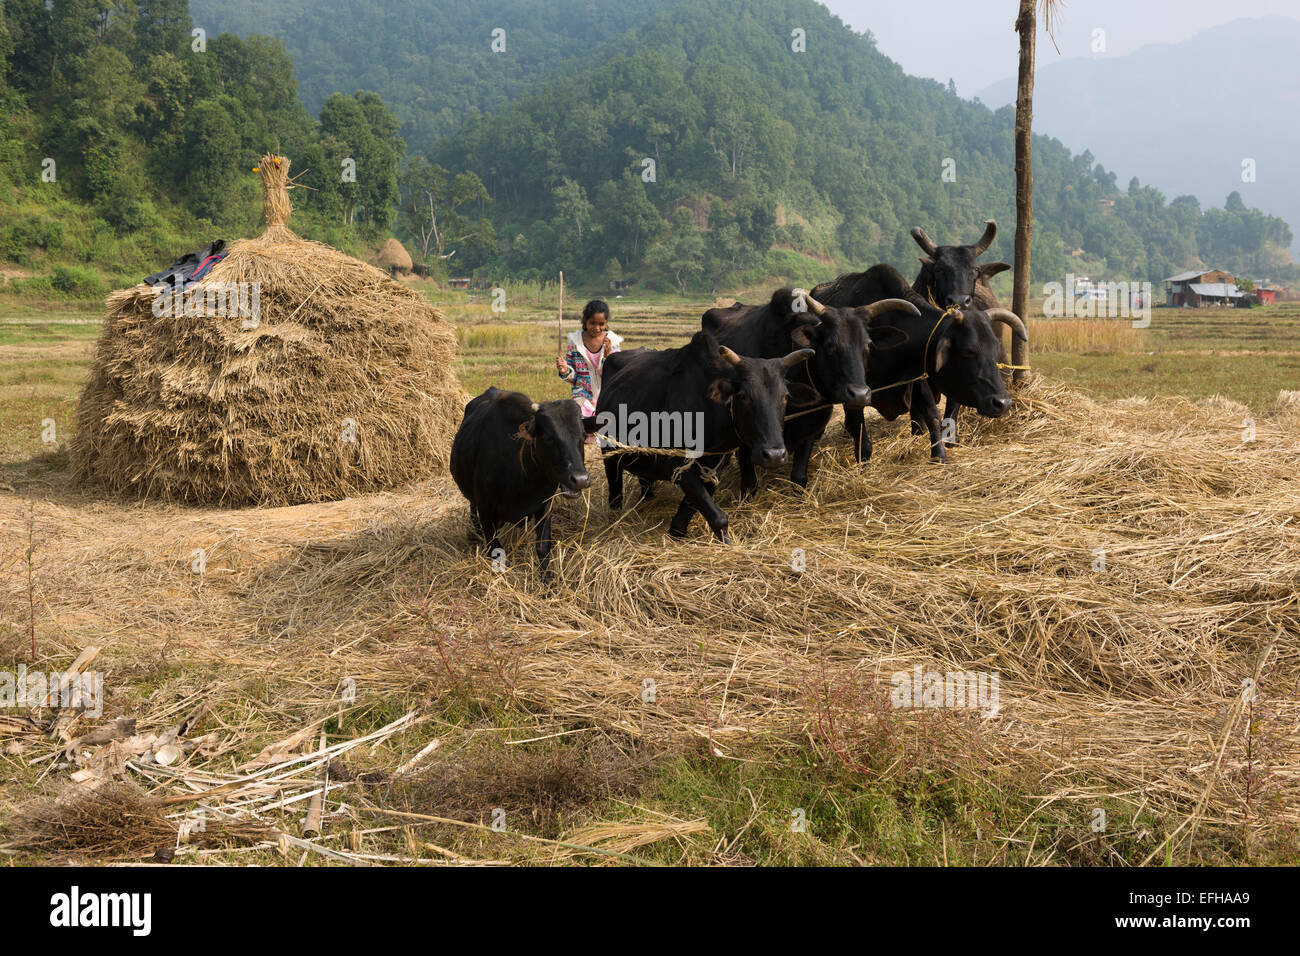 Riz de battage avec des vaches, dans une vallée sur le trek Royal, près de Pokhara, Népal Banque D'Images